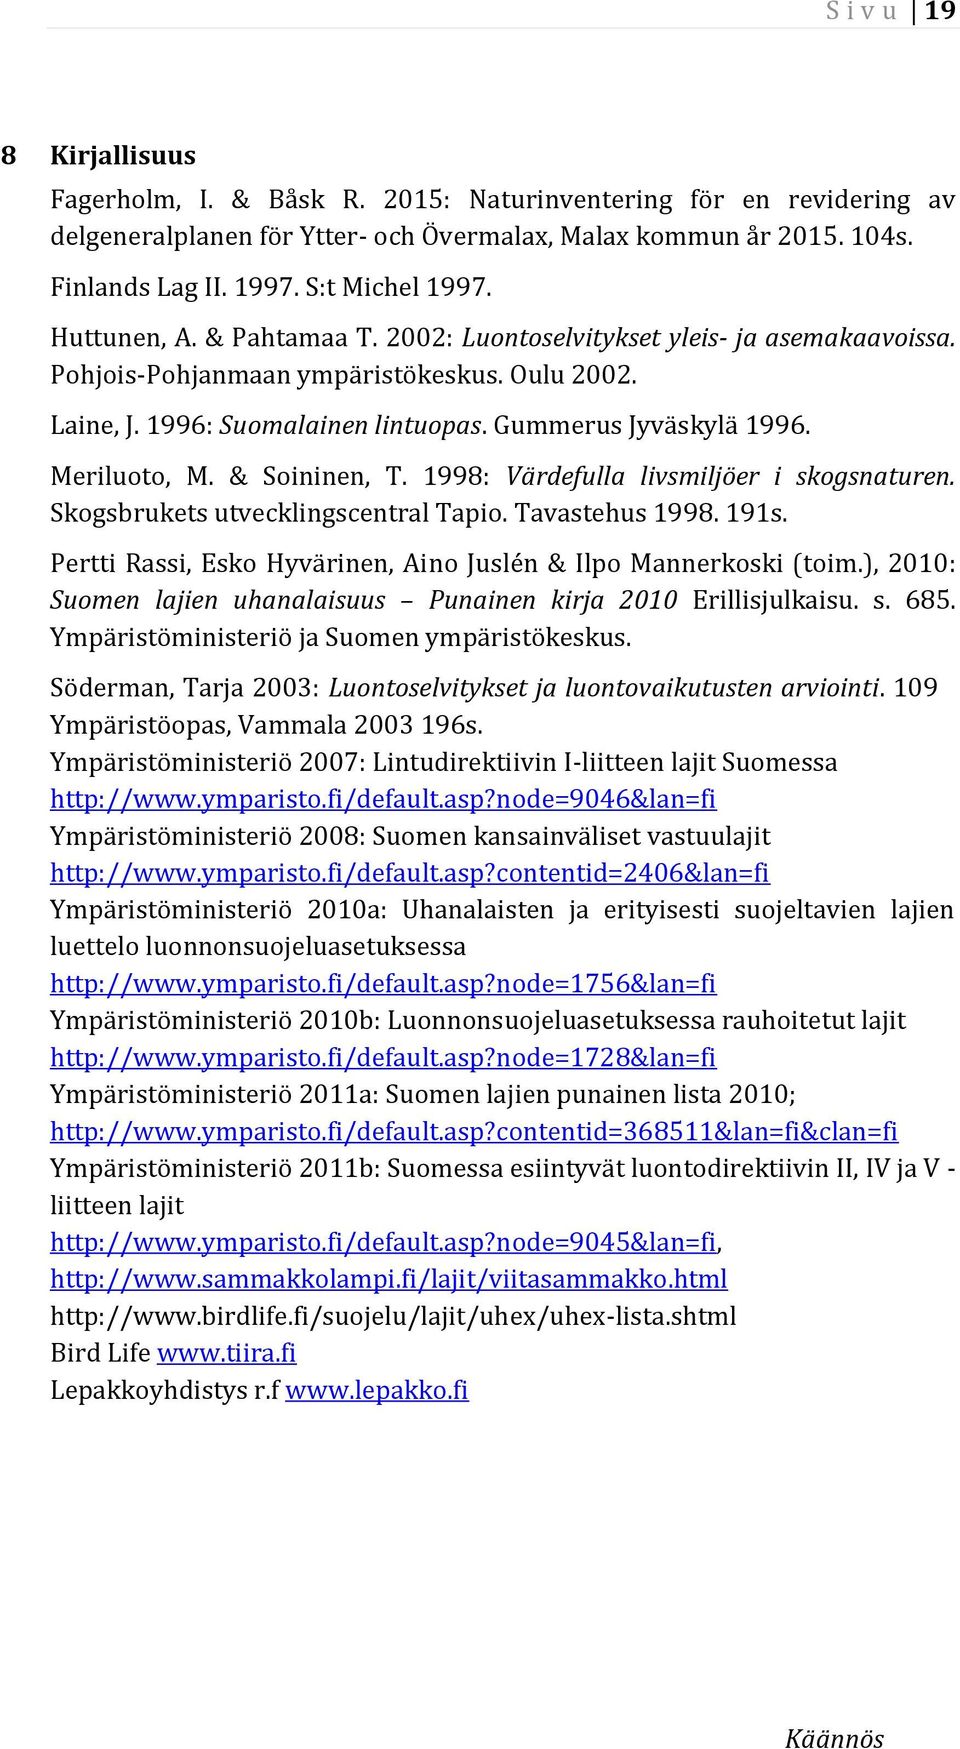 Gummerus Jyväskylä 1996. Meriluoto, M. & Soininen, T. 1998: Värdefulla livsmiljöer i skogsnaturen. Skogsbrukets utvecklingscentral Tapio. Tavastehus 1998. 191s.